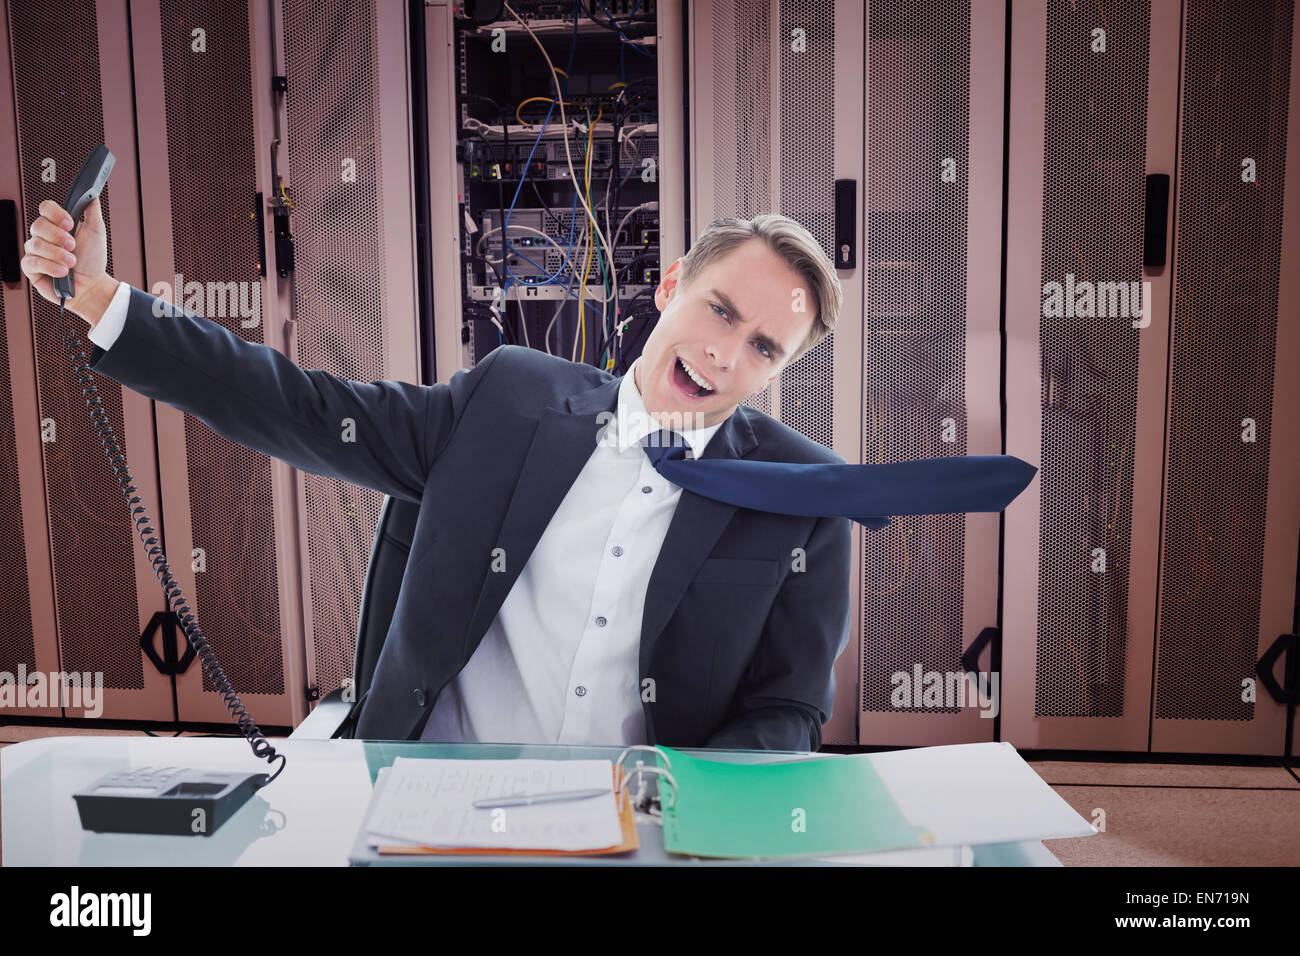 Immagine composita di imprenditore urlando come egli tiene fuori il telefono Foto Stock